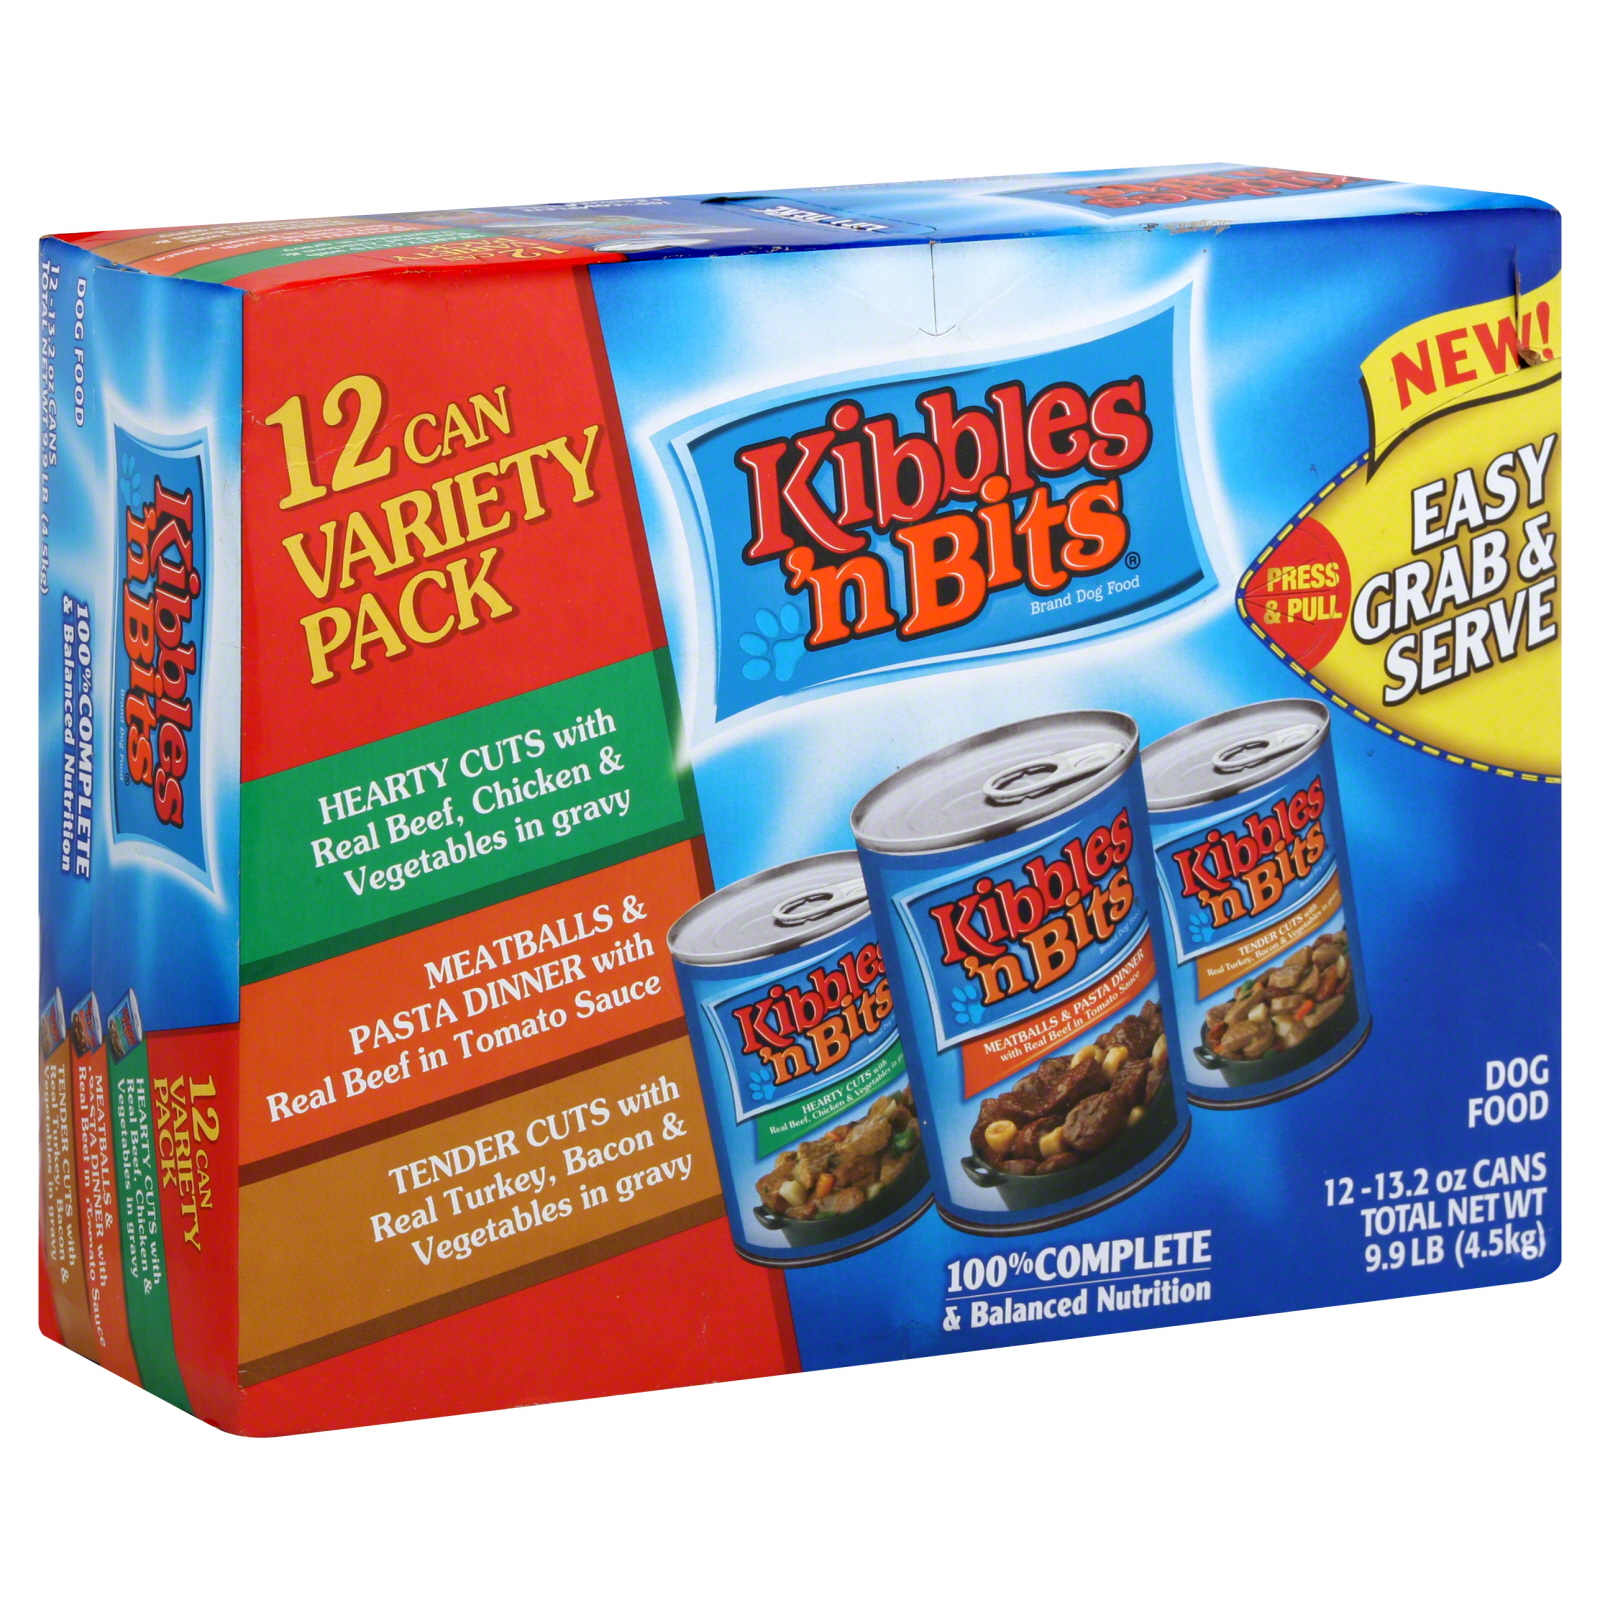 Kibbles 'n Bits Dog Food, Variety Pack, 12 - 13.2 oz cans [9.9 lb (4.5 kg)]